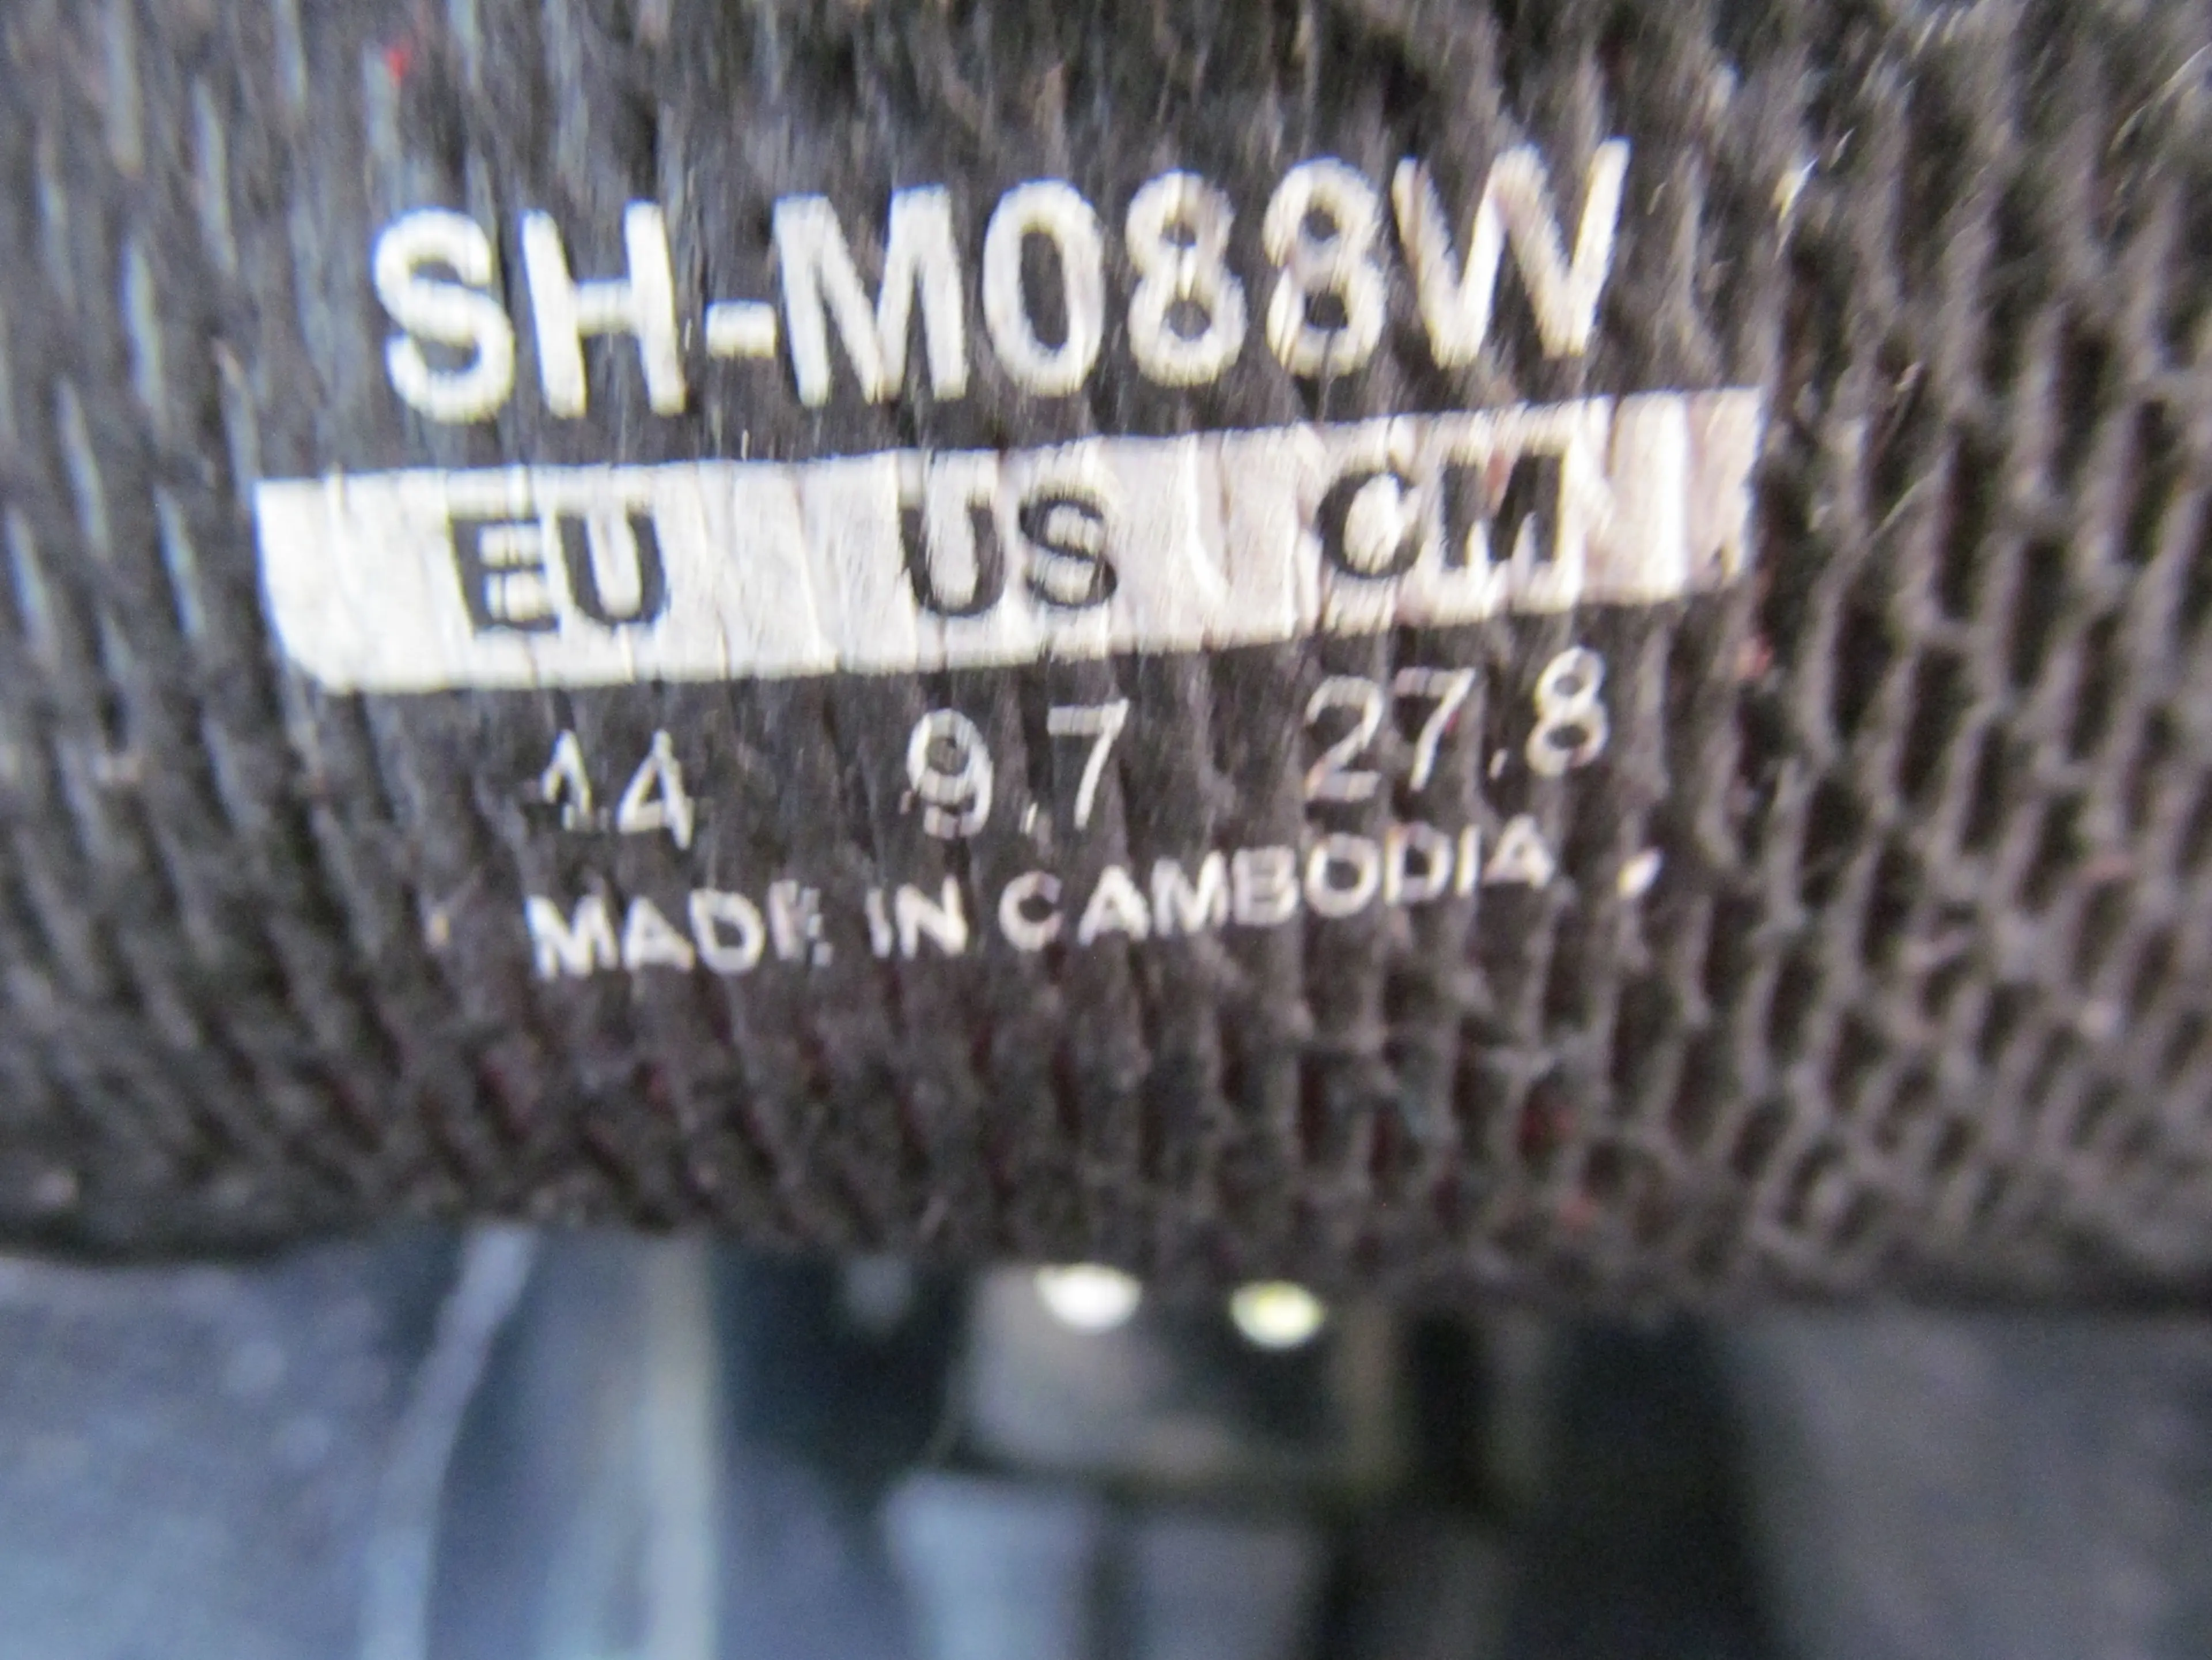 Image Pantofi Shimano SH-M088W nr 44. 27.8 cm